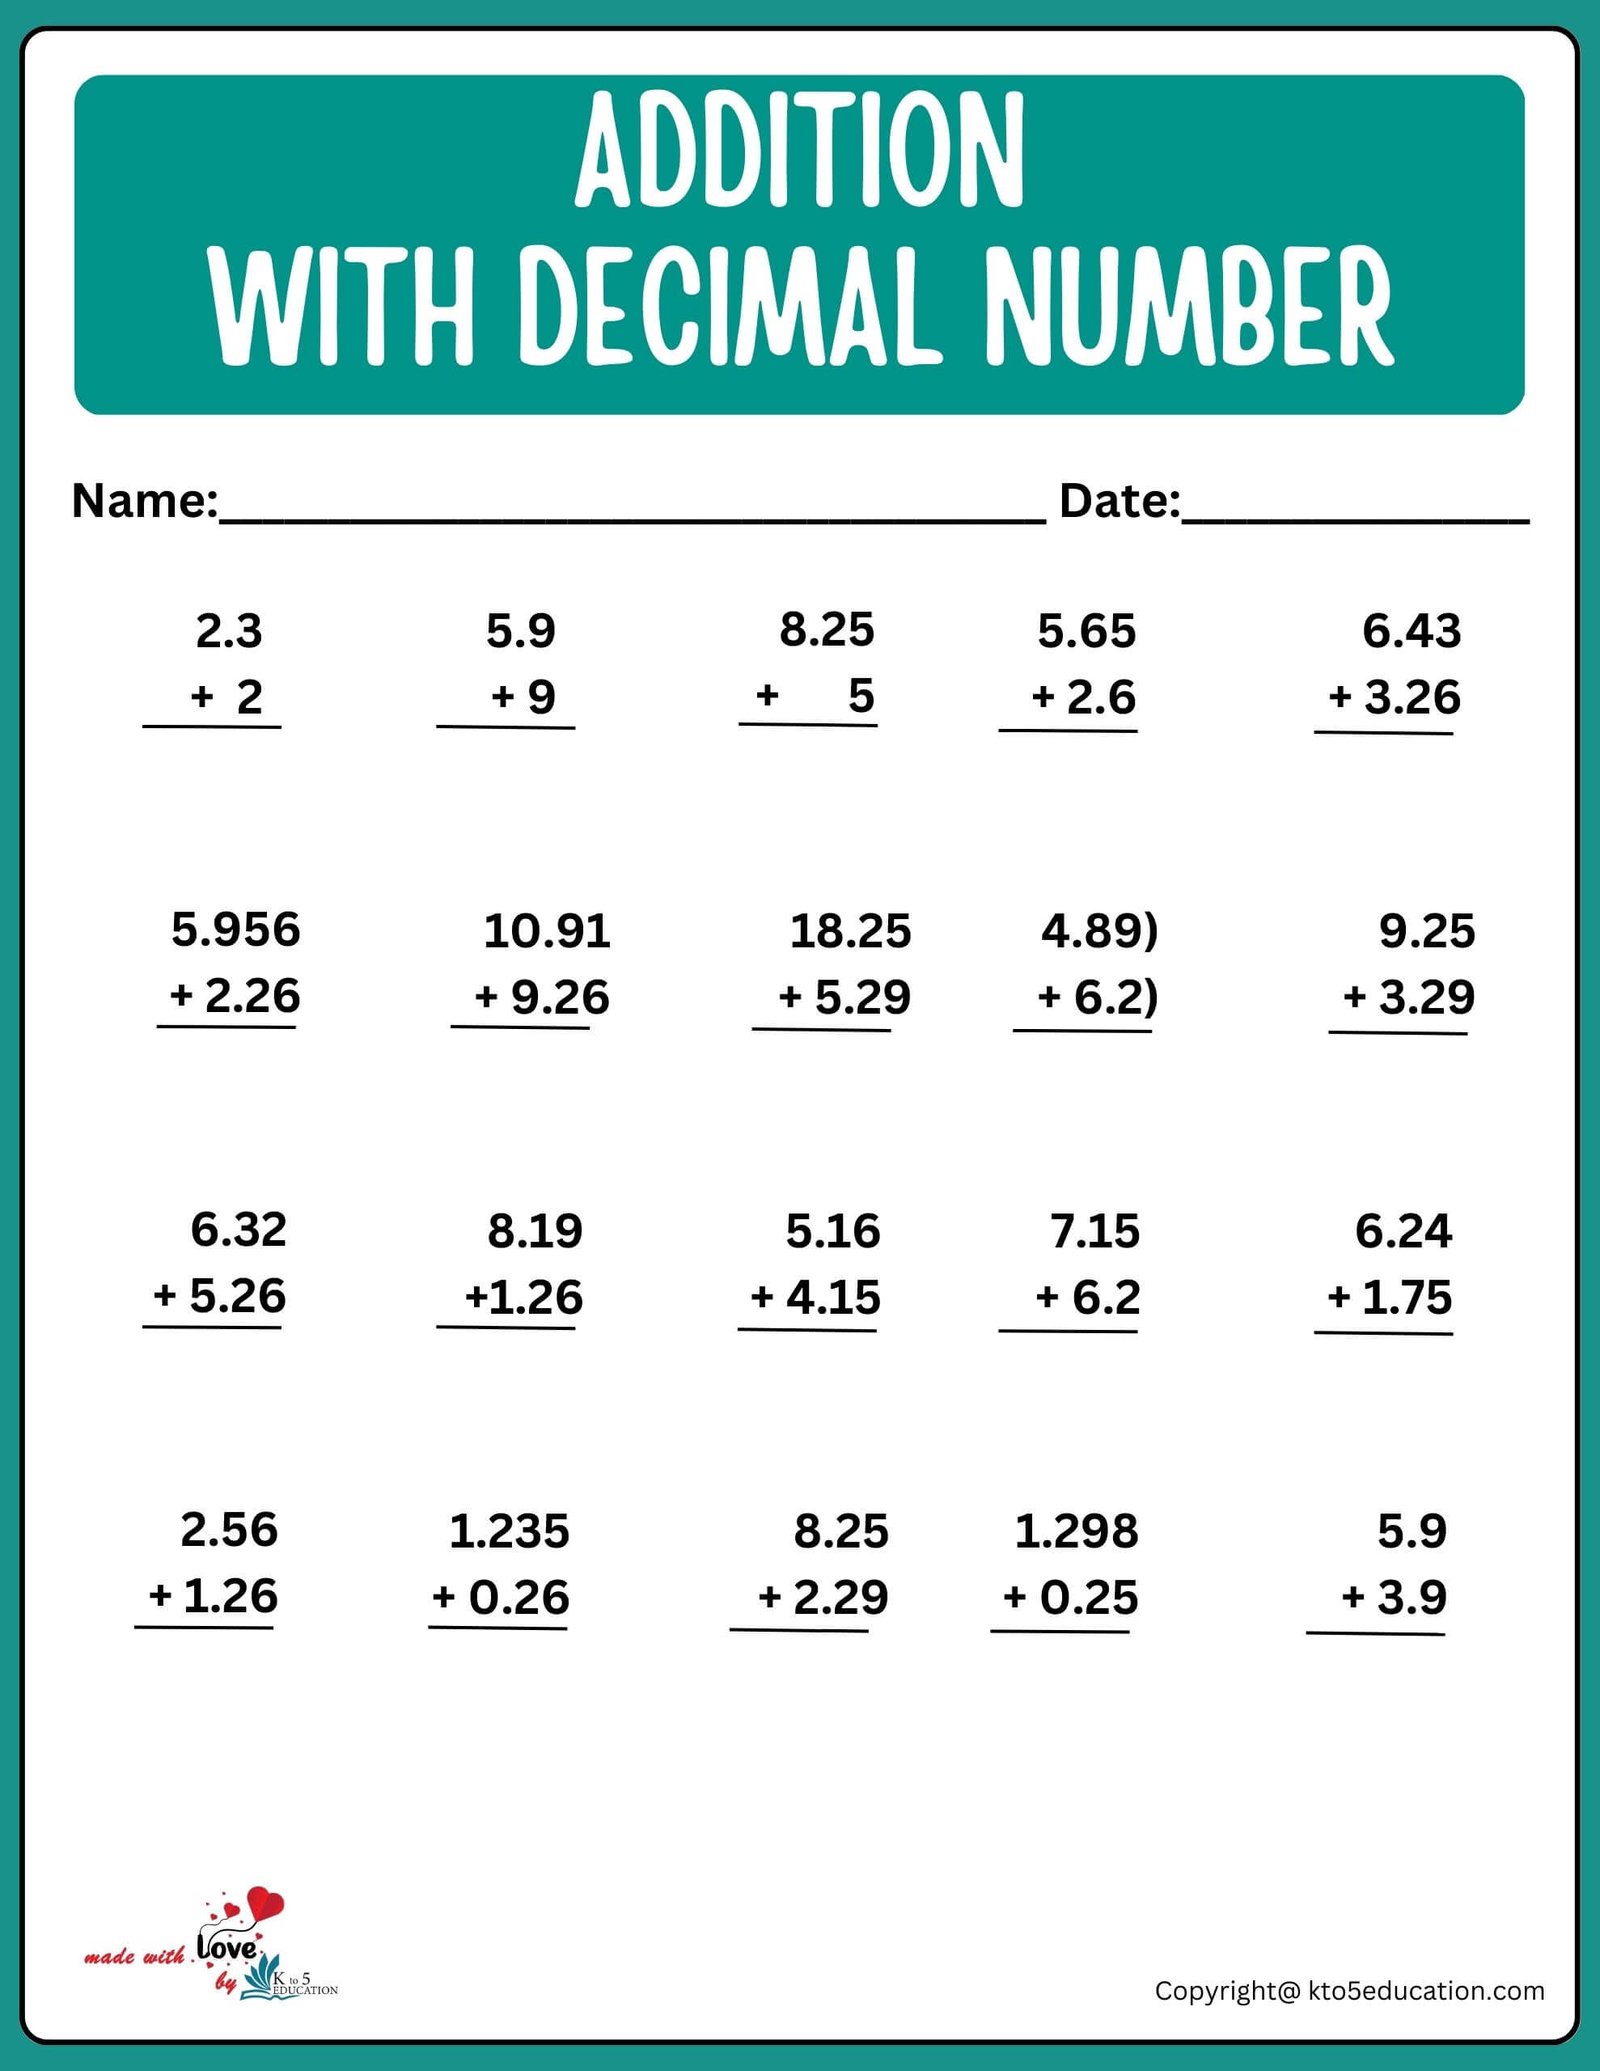 Decimal Number Addition Worksheet